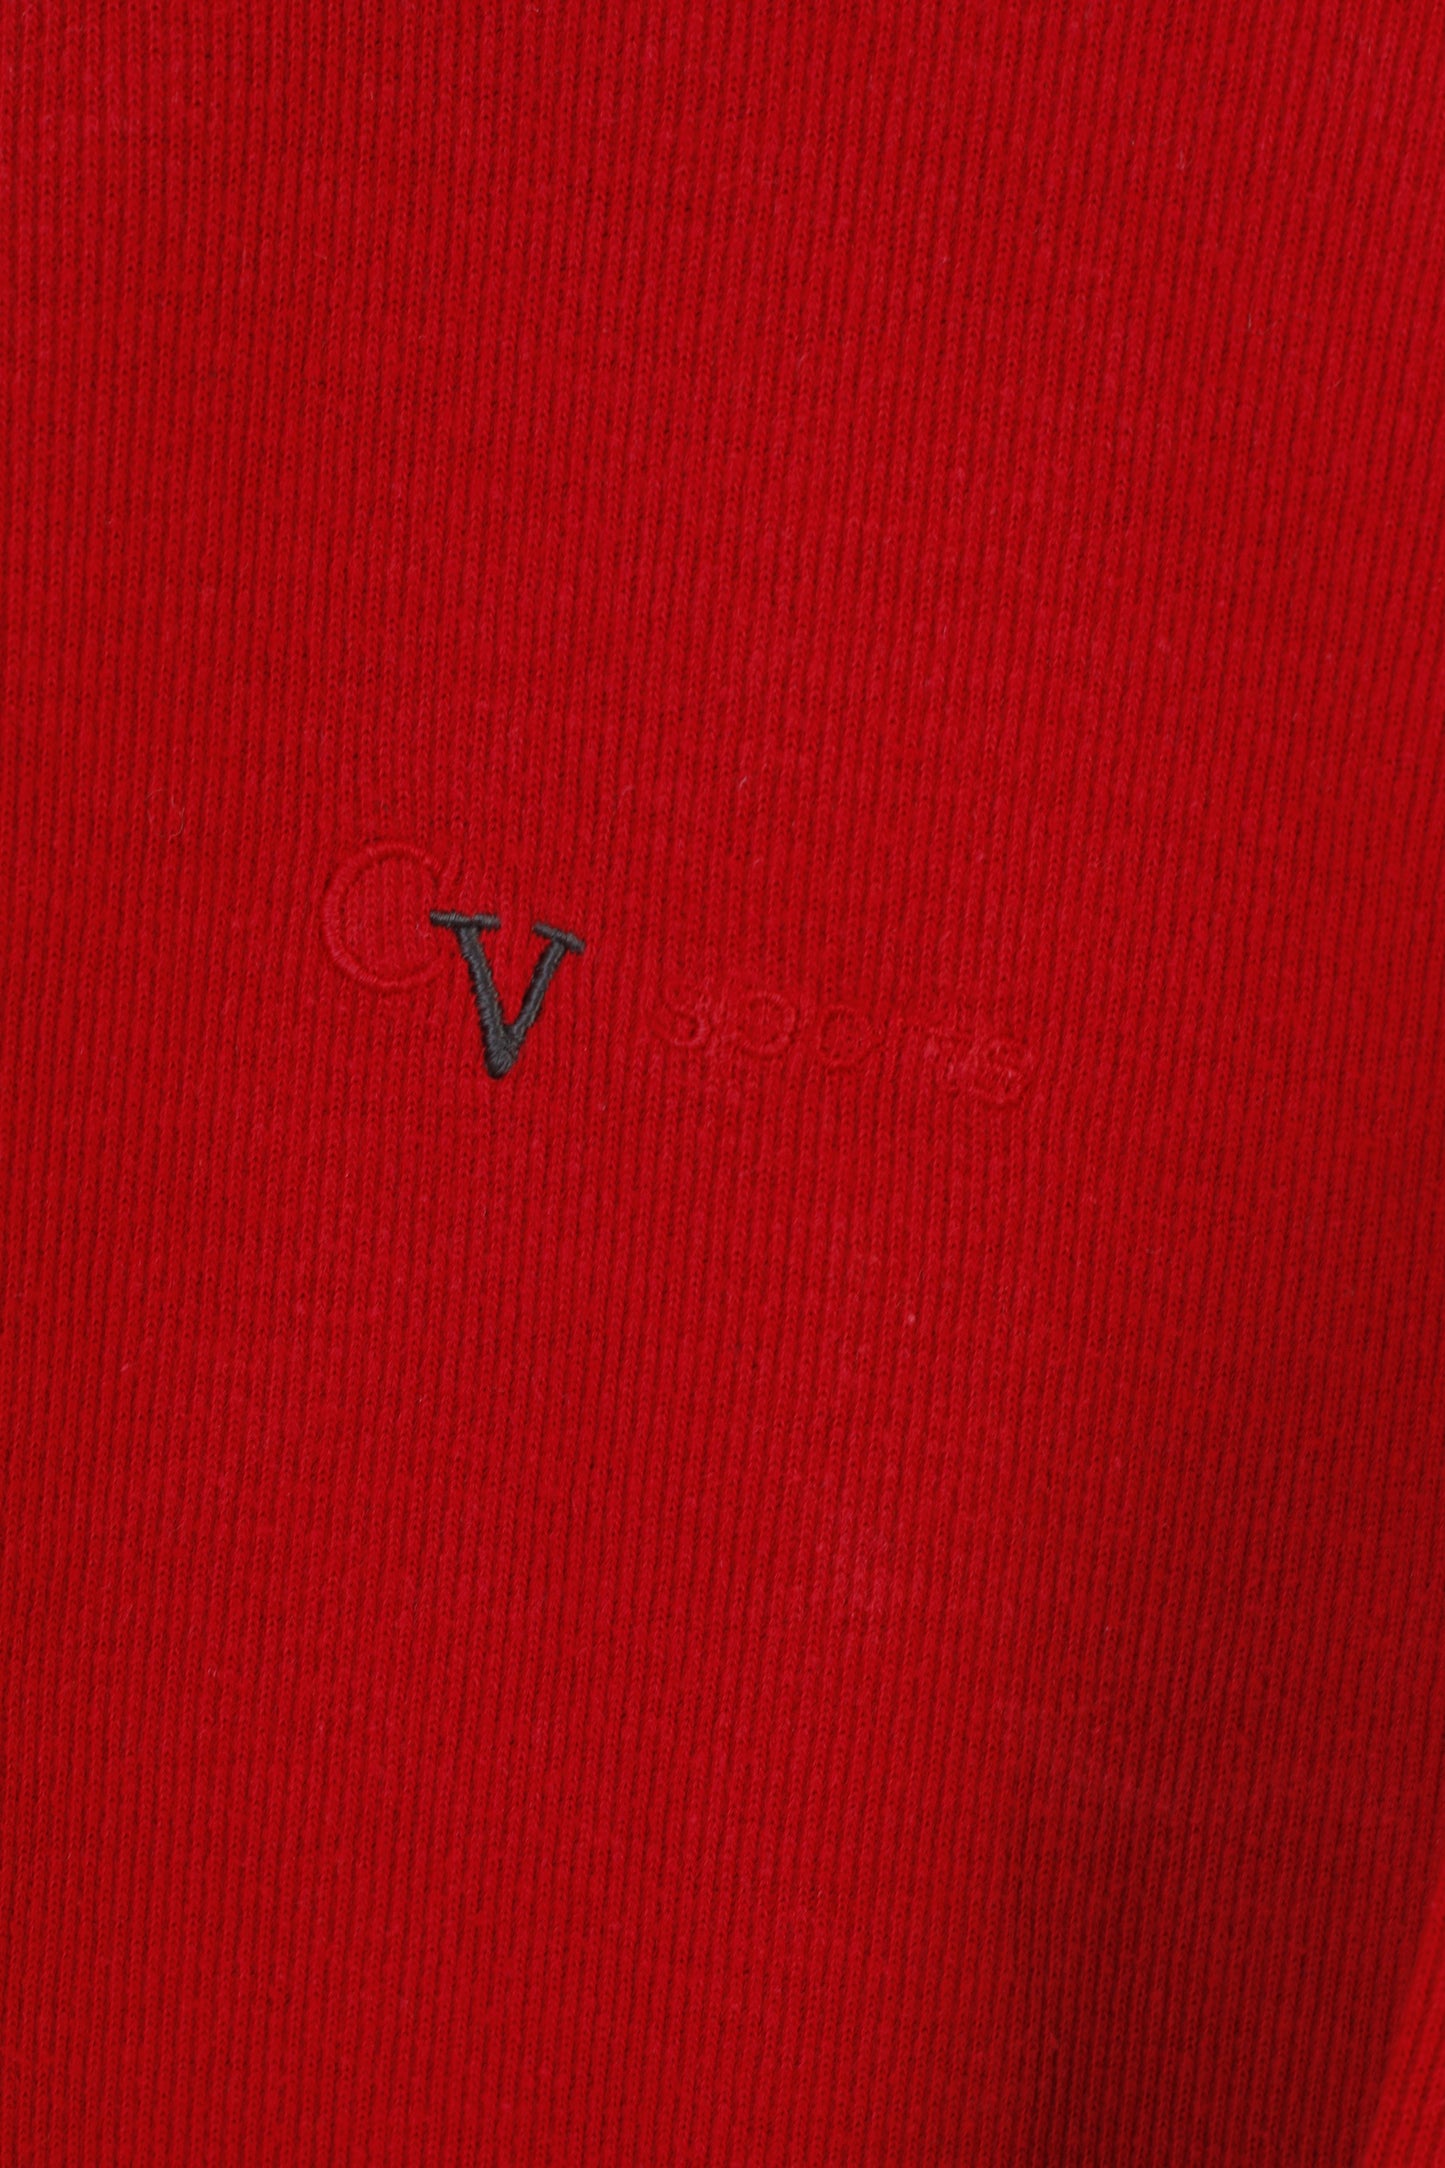 Colour Ville Men XL Jumper Red Cotton Sweater Zip Neck Vintage Sports Top